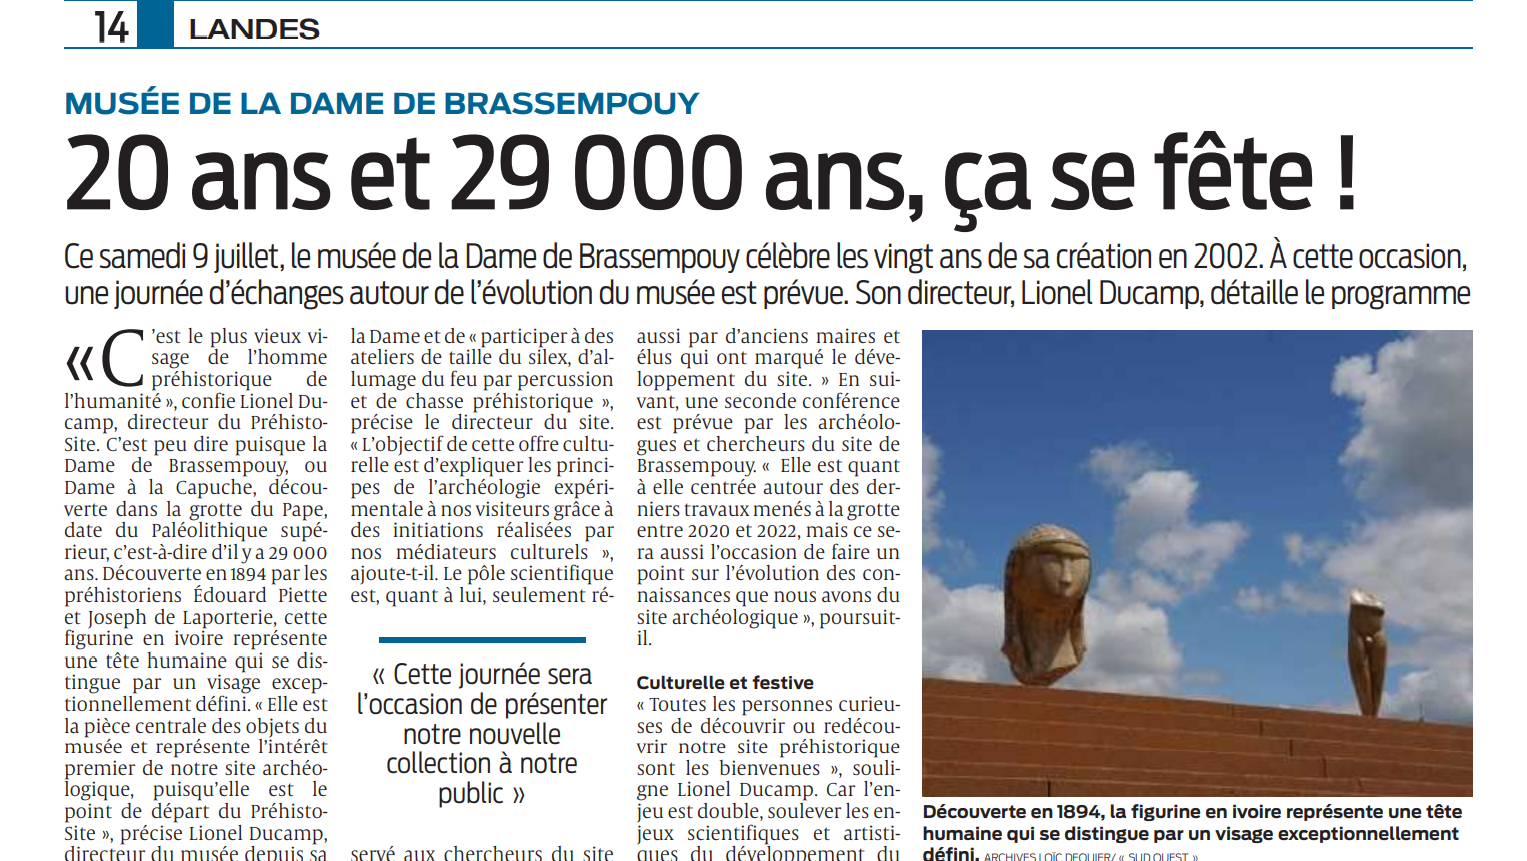 Landes : la fête de « la dame de Brassempouy » : la dame à la capuche